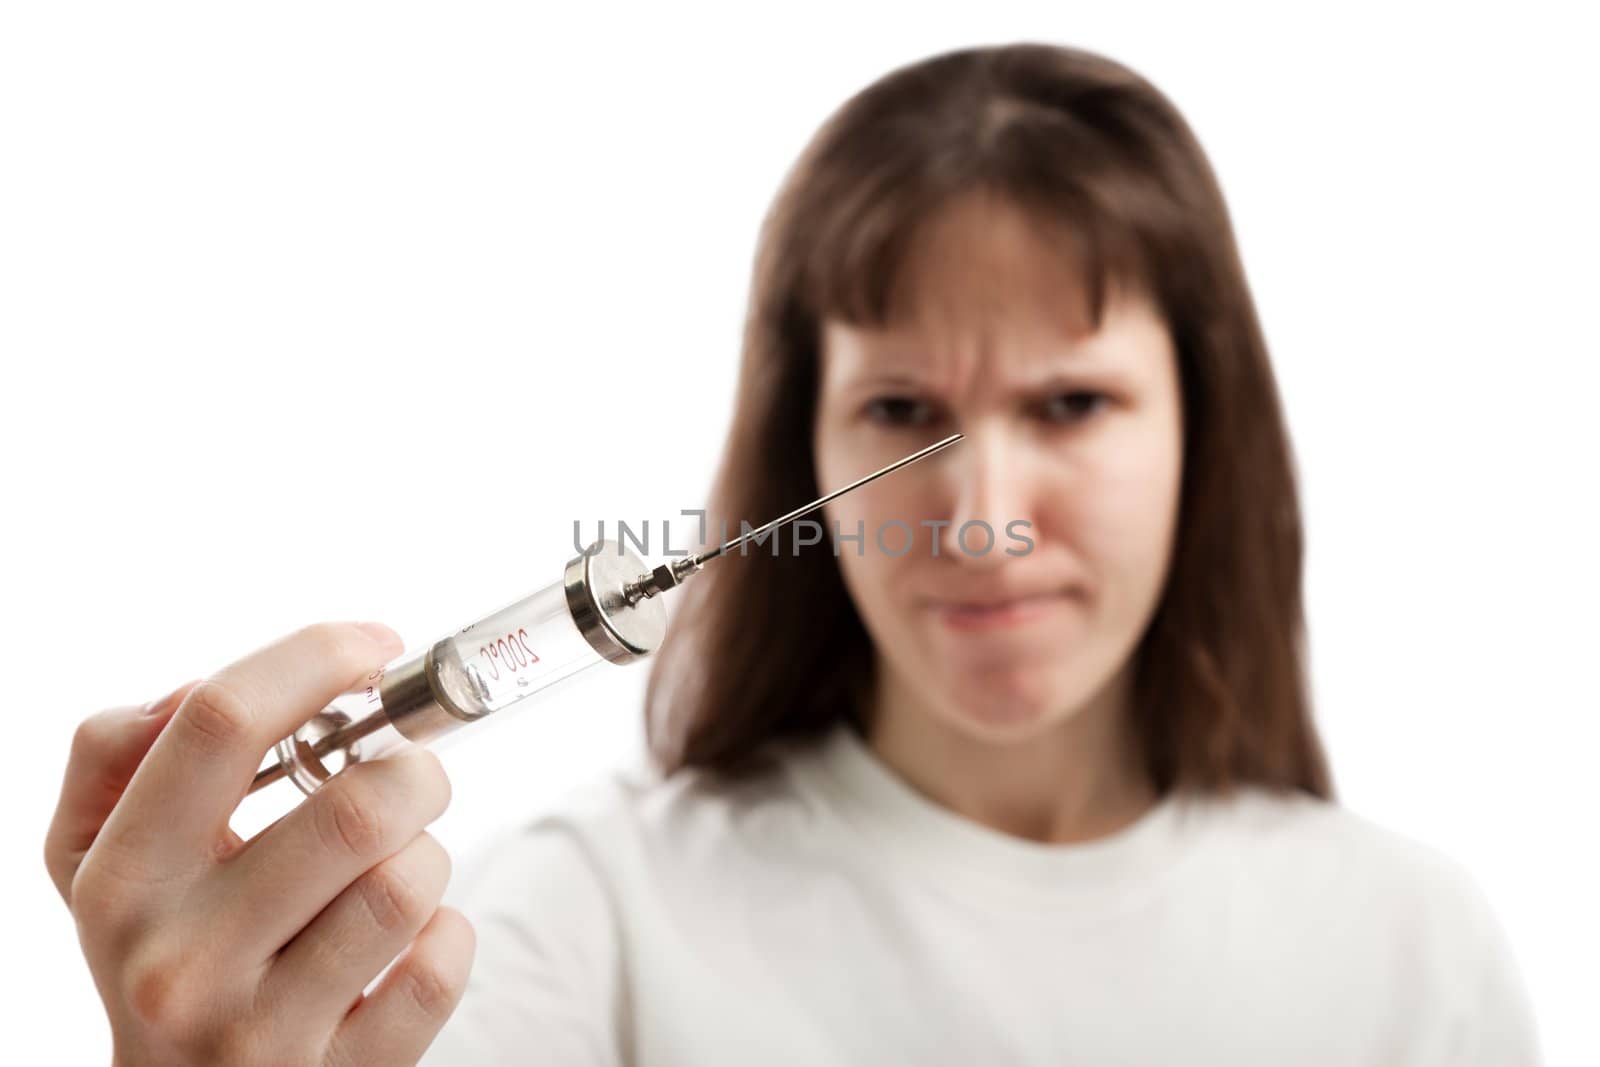 Women holding injecting syringe by ia_64